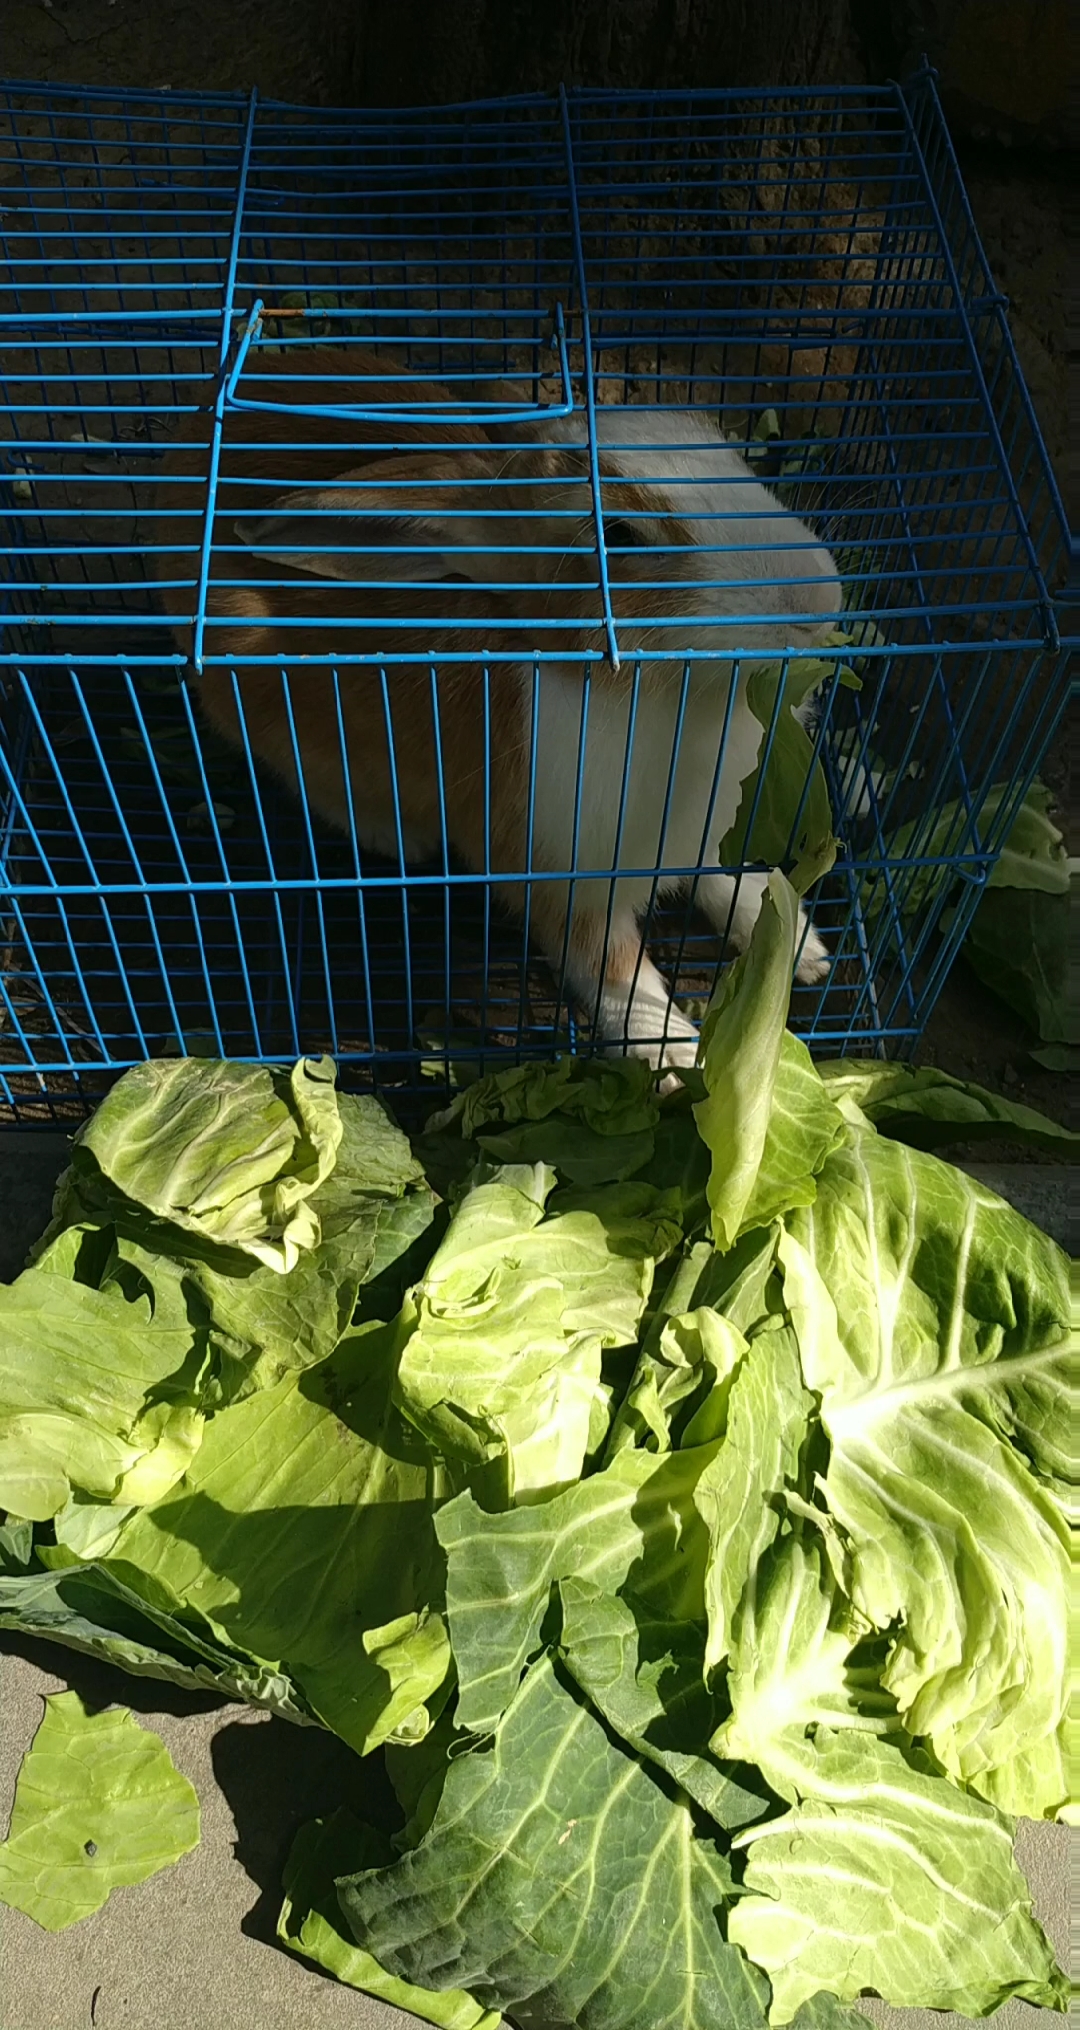 可爱的小兔子在吃青菜叶